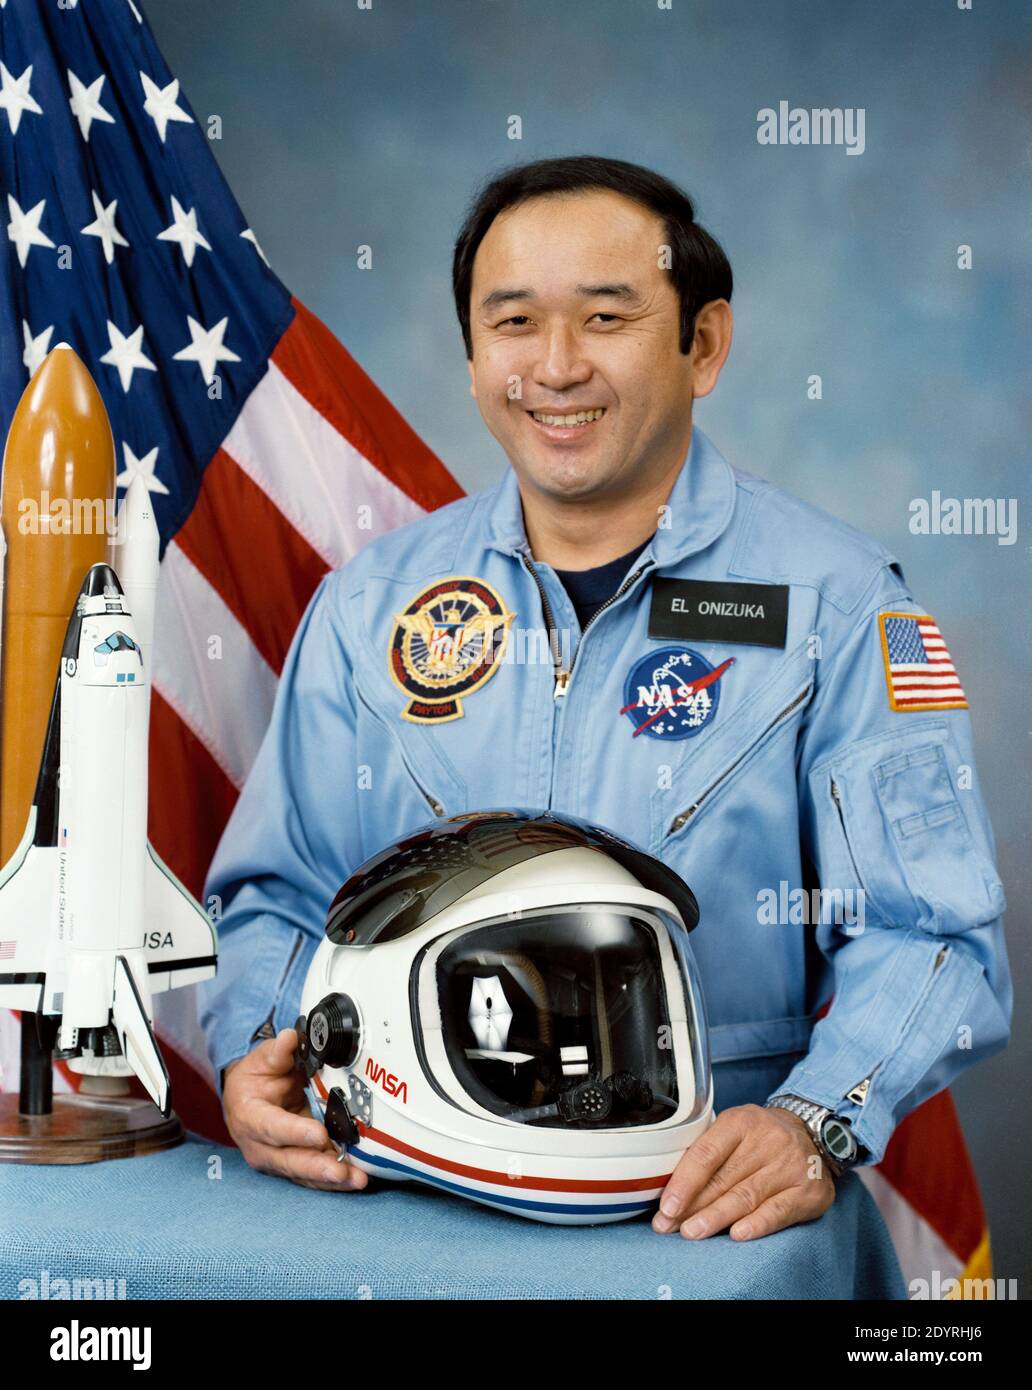 Ellison Shoji Onizuka (24 giugno 1946 – 28 gennaio 1986) astronauta e ingegnere americano di Kealakekua, Hawaii, che ha volato con successo nello spazio con lo Space Shuttle Discovery su STS-51-C. Morì nella distruzione dello Space Shuttle Challenger, nel quale lavorava come Mission Specialist per la missione STS-51-L. Fu il primo americano asiatico e la prima persona di origine giapponese a raggiungere lo spazio. Foto Stock